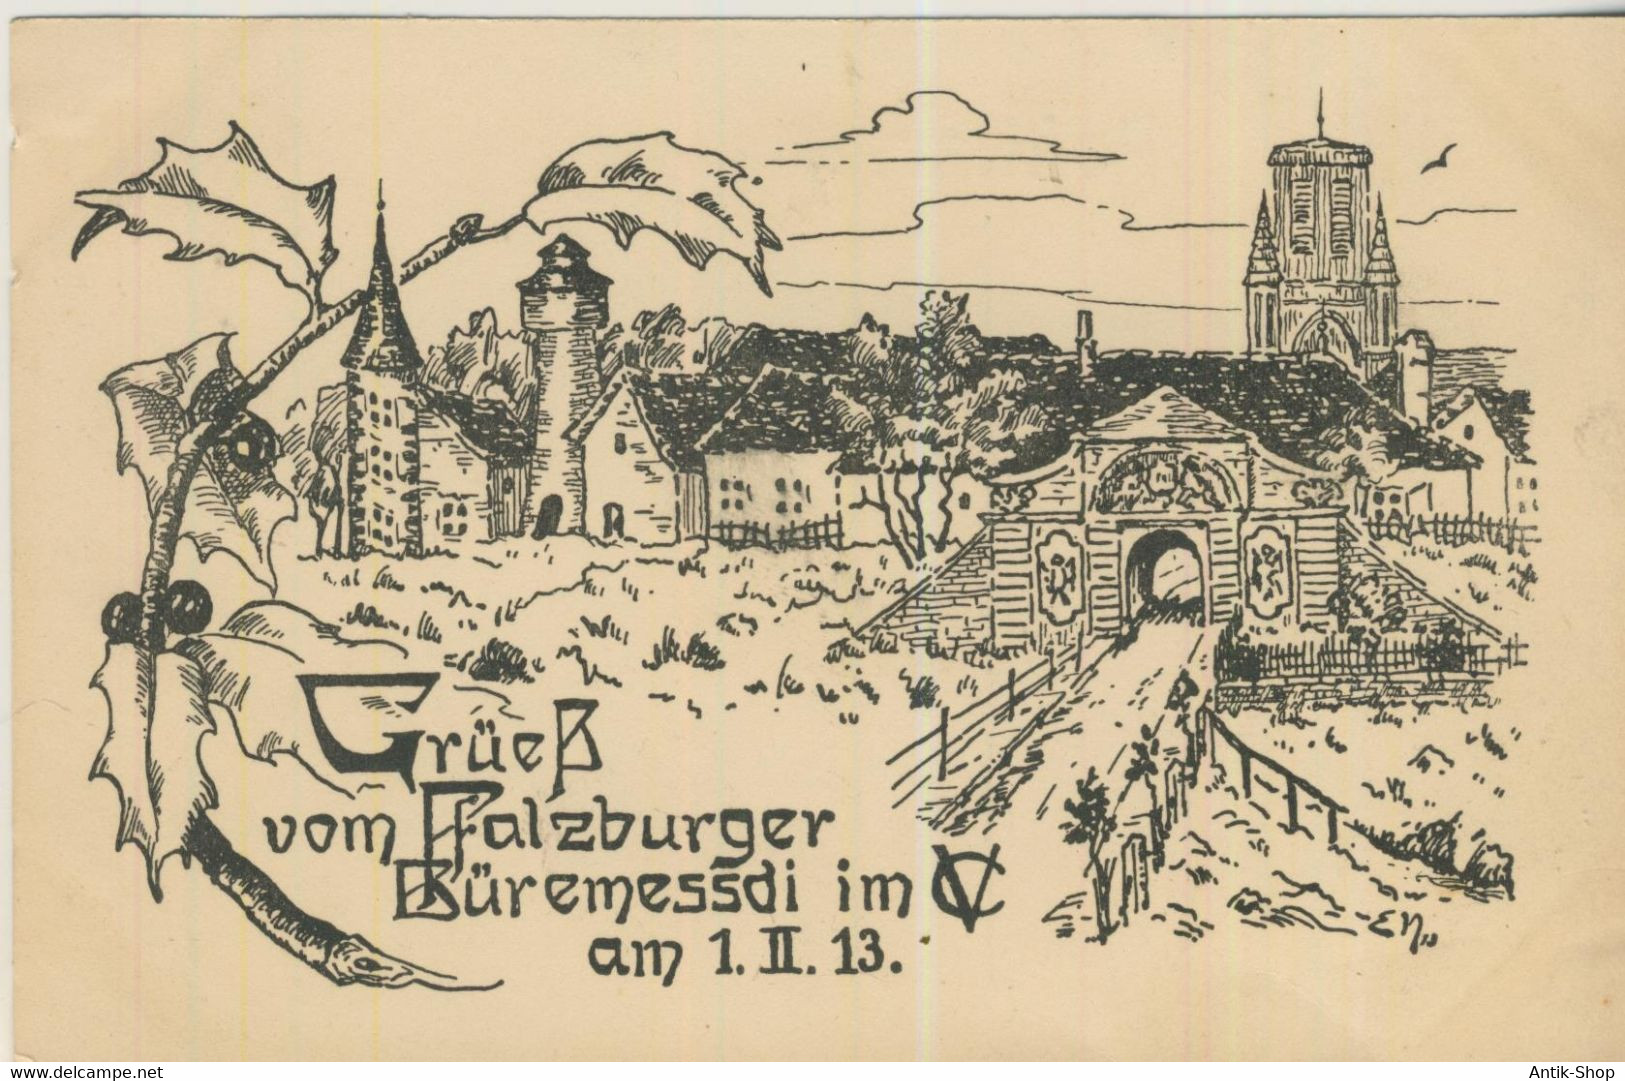 Grüeß Vom Pfalzburger Büremessdi Im CV Am 1.II.13  - Von 1913 (59009) - Lothringen